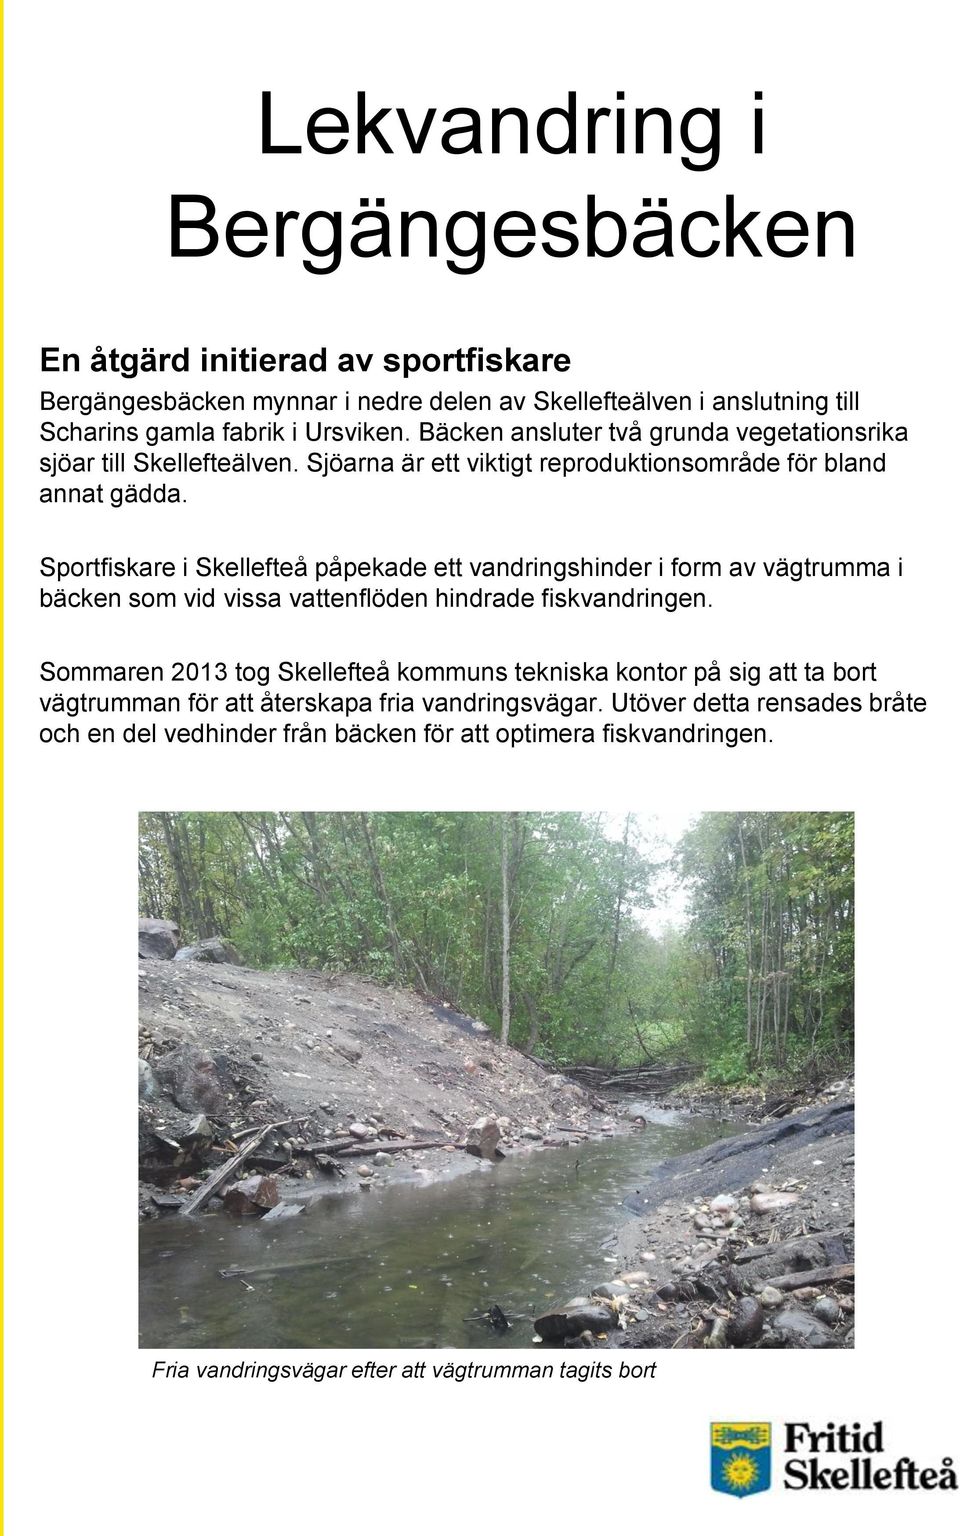 Sportfiskare i Skellefteå påpekade ett vandringshinder i form av vägtrumma i bäcken som vid vissa vattenflöden hindrade fiskvandringen.